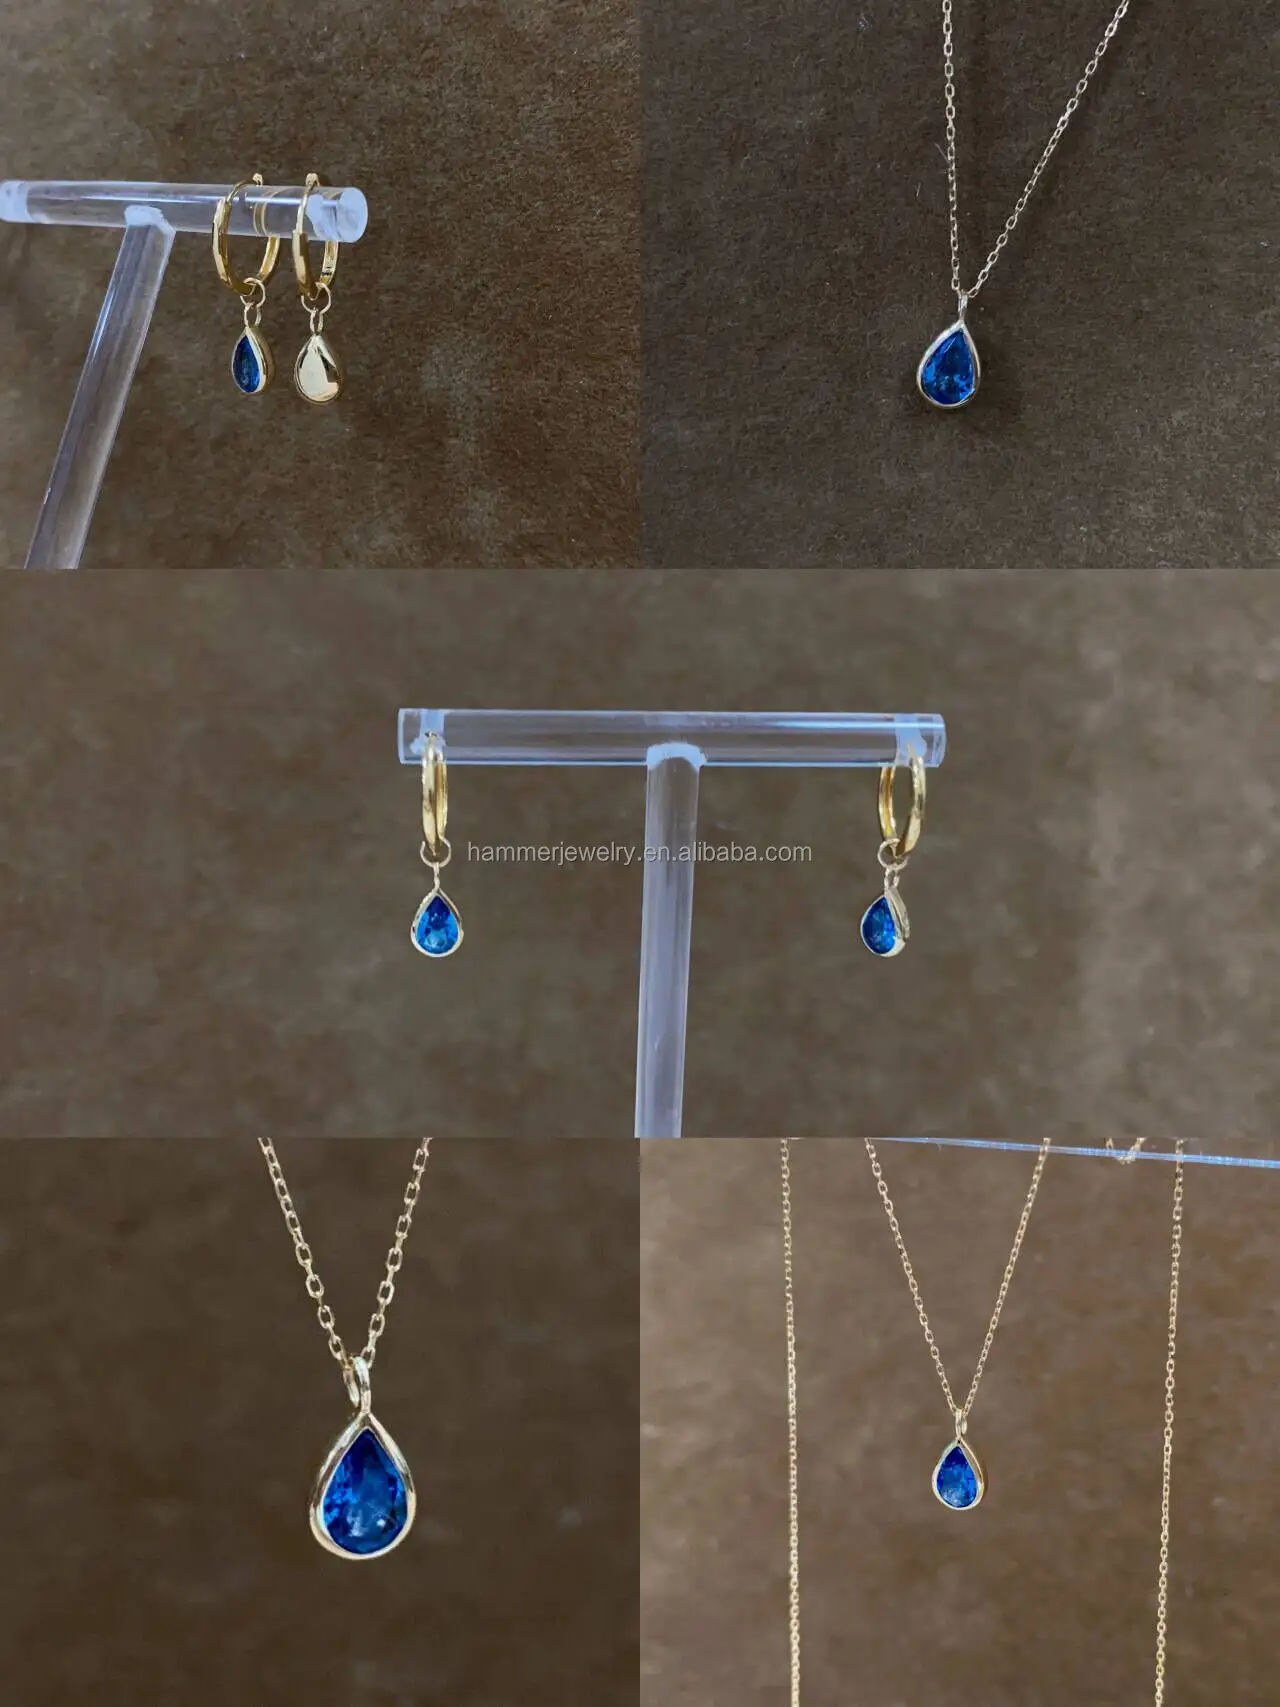 Pingente de ouro maciço 14K personalizado com pedras preciosas naturais de topázio azul AU585, joia fina soldada permanentemente DIY